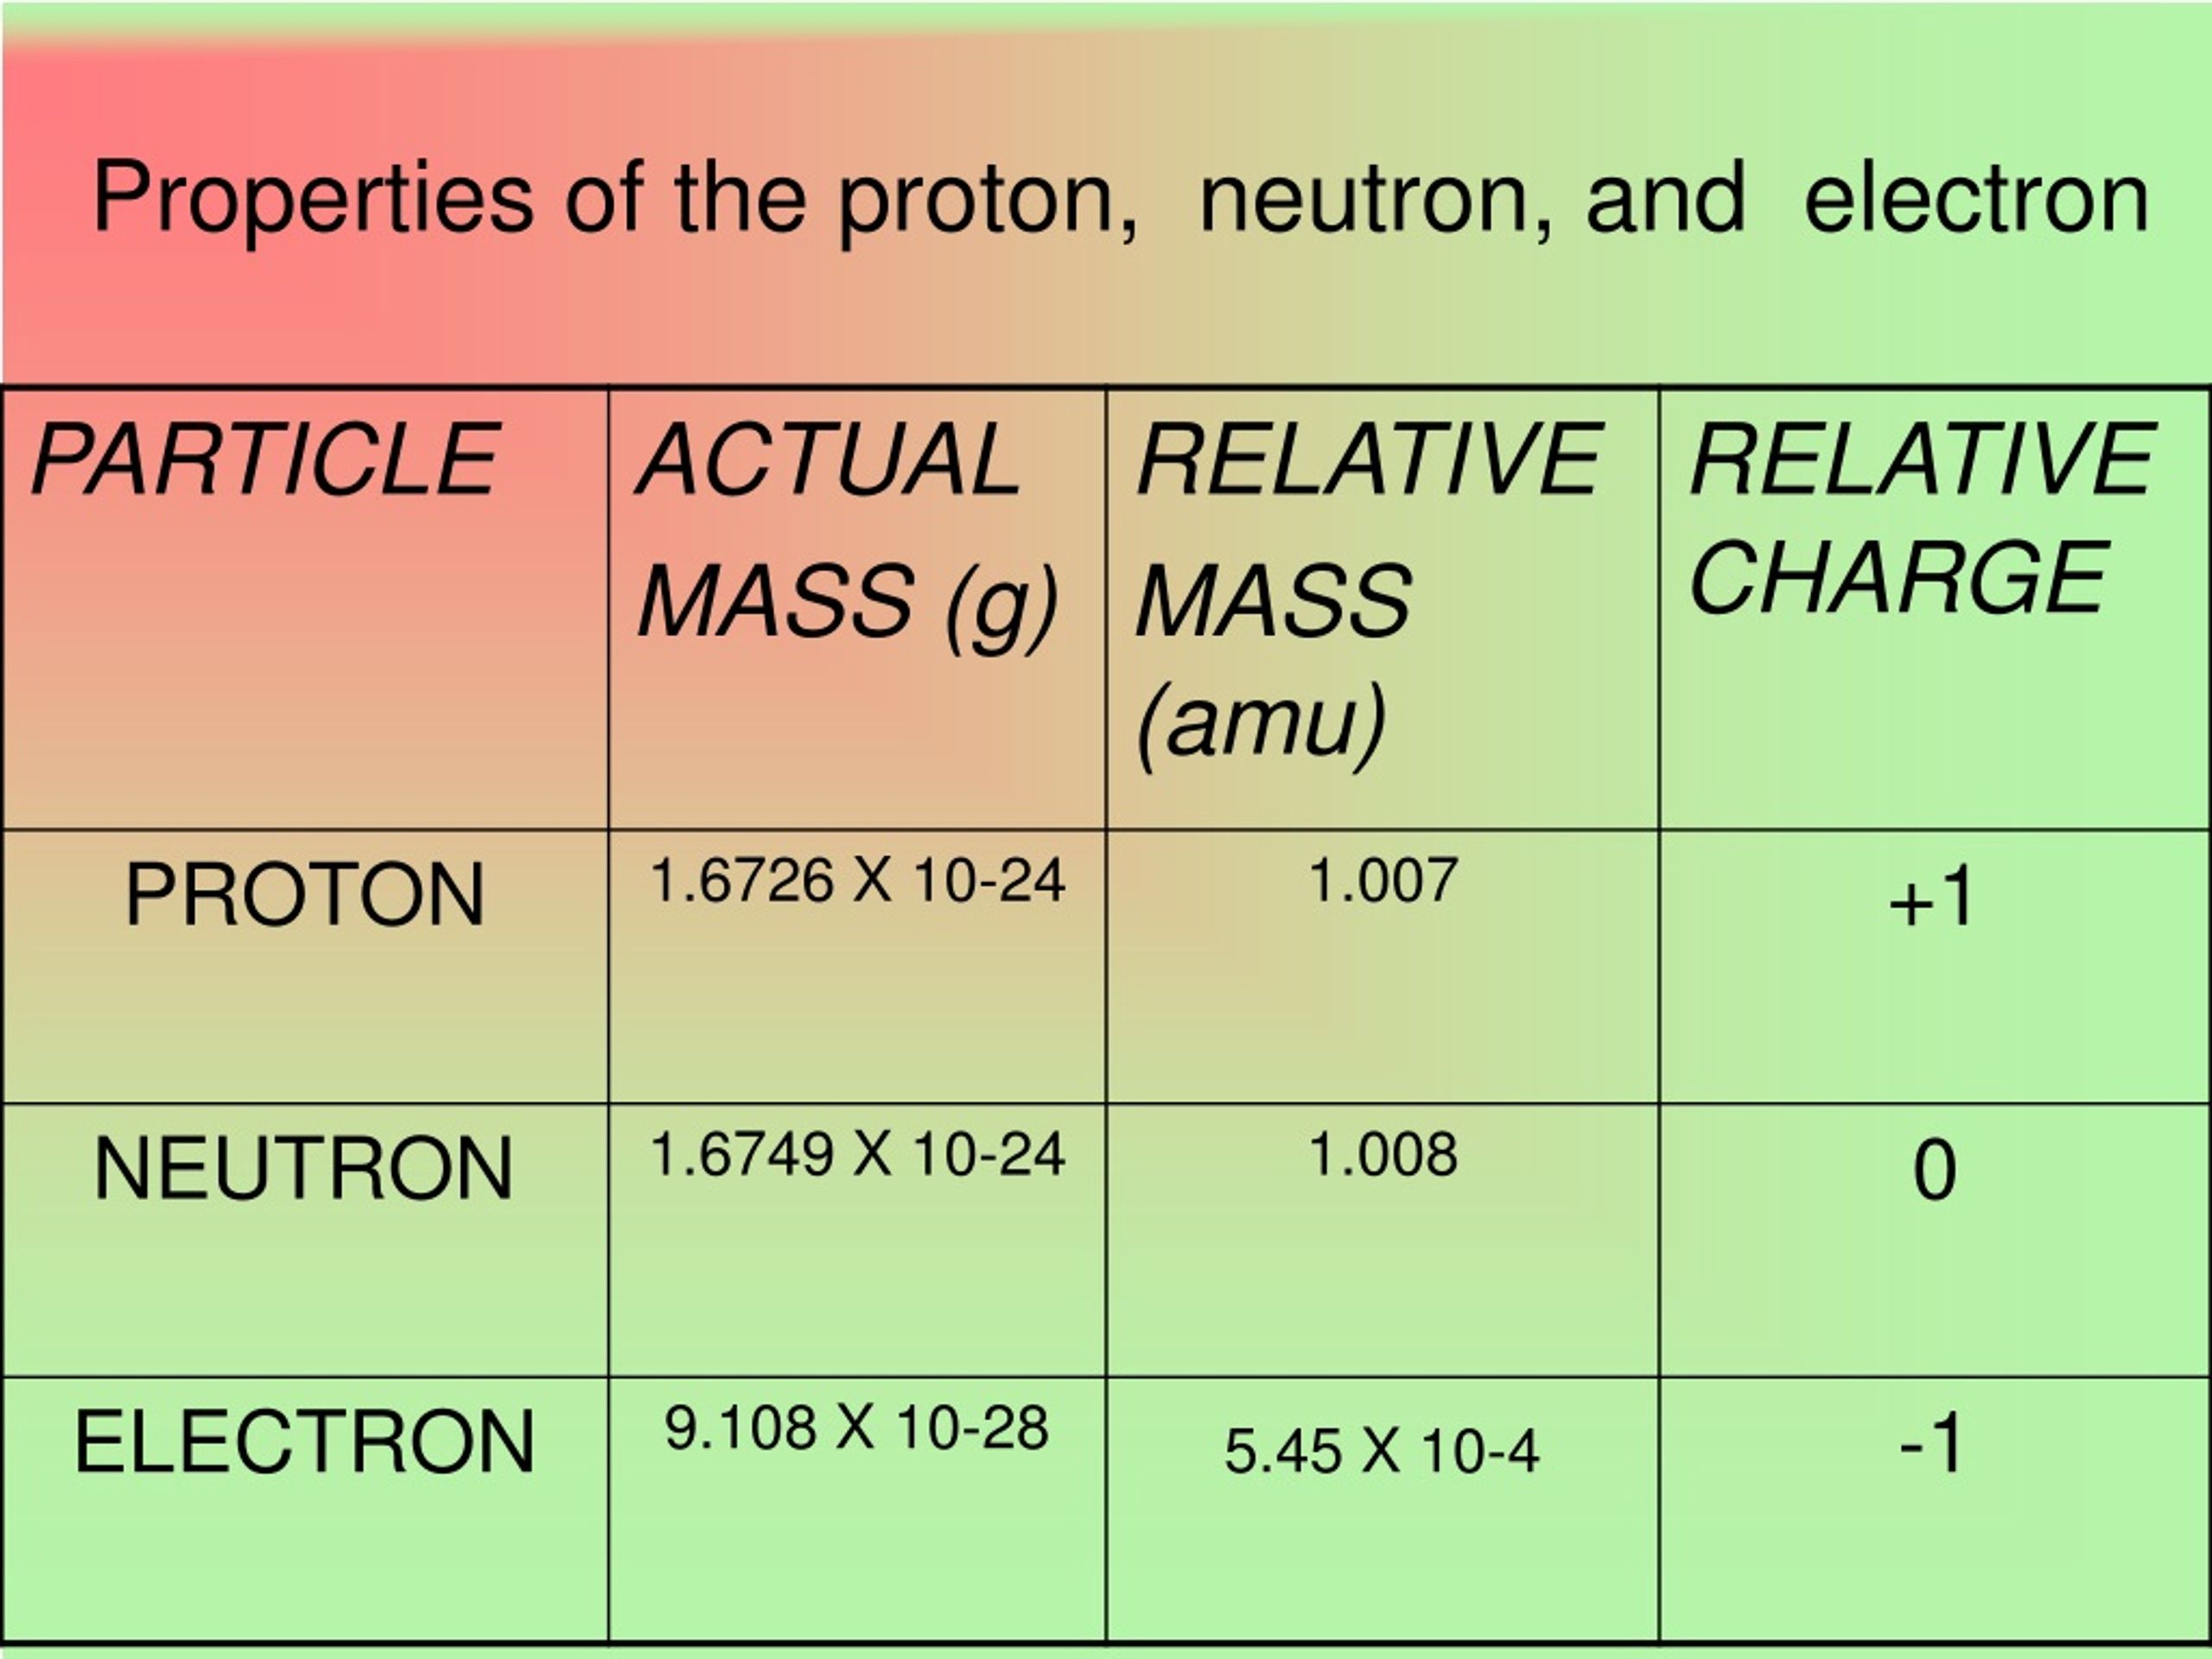 neutrino plus neutron equals proton plus election